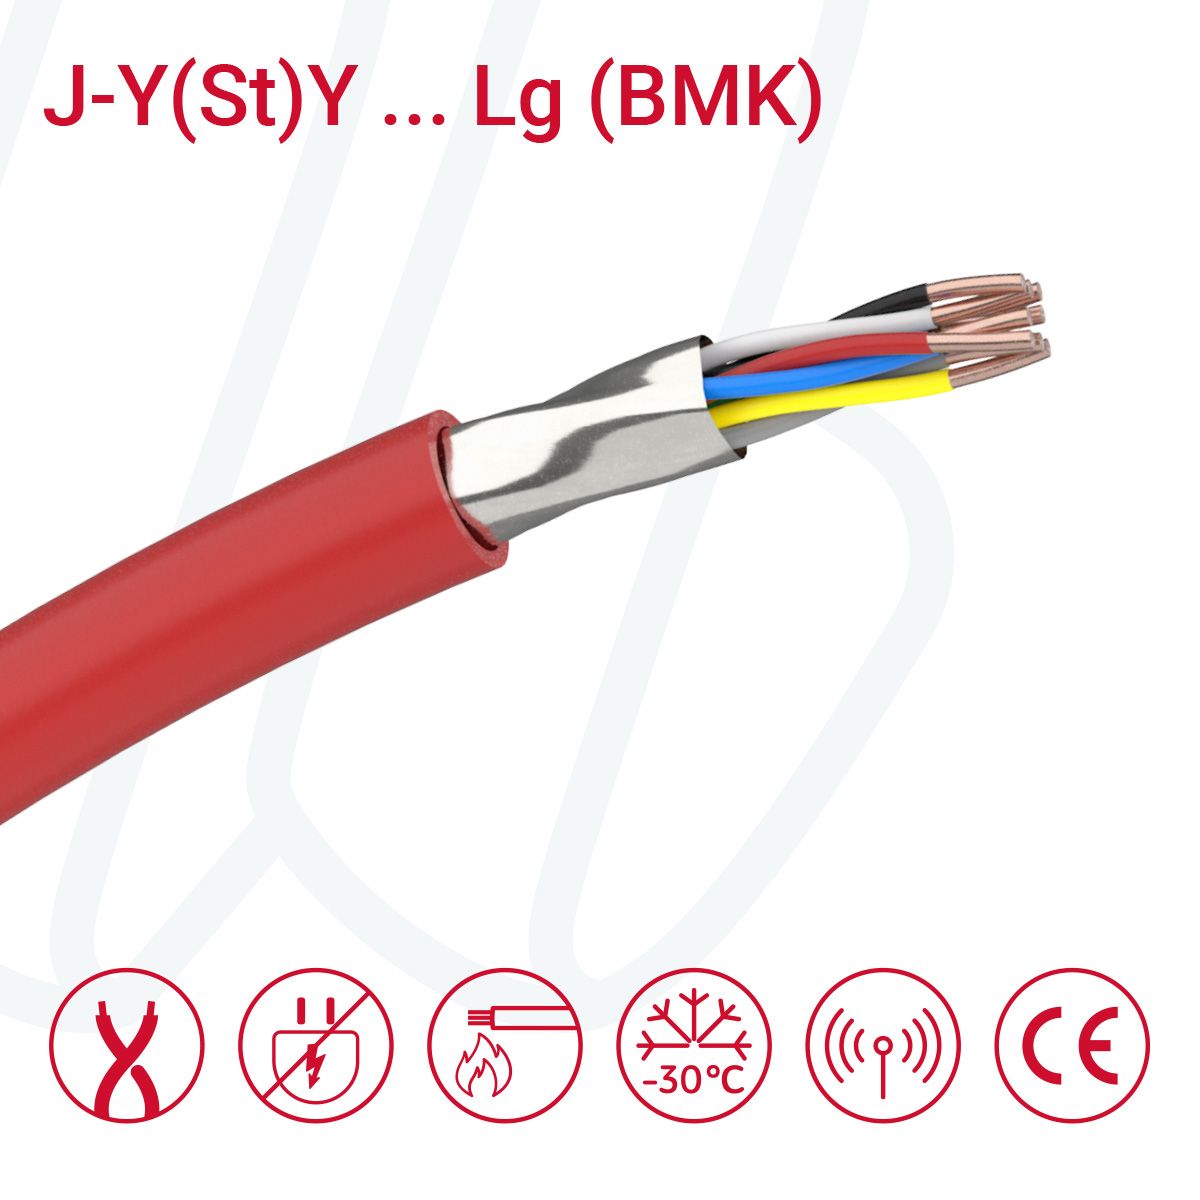 Кабель J-Y(St)Y ... Lg 04X2X0.8 (0.52мм²) BMK червоний, 08, 0.52